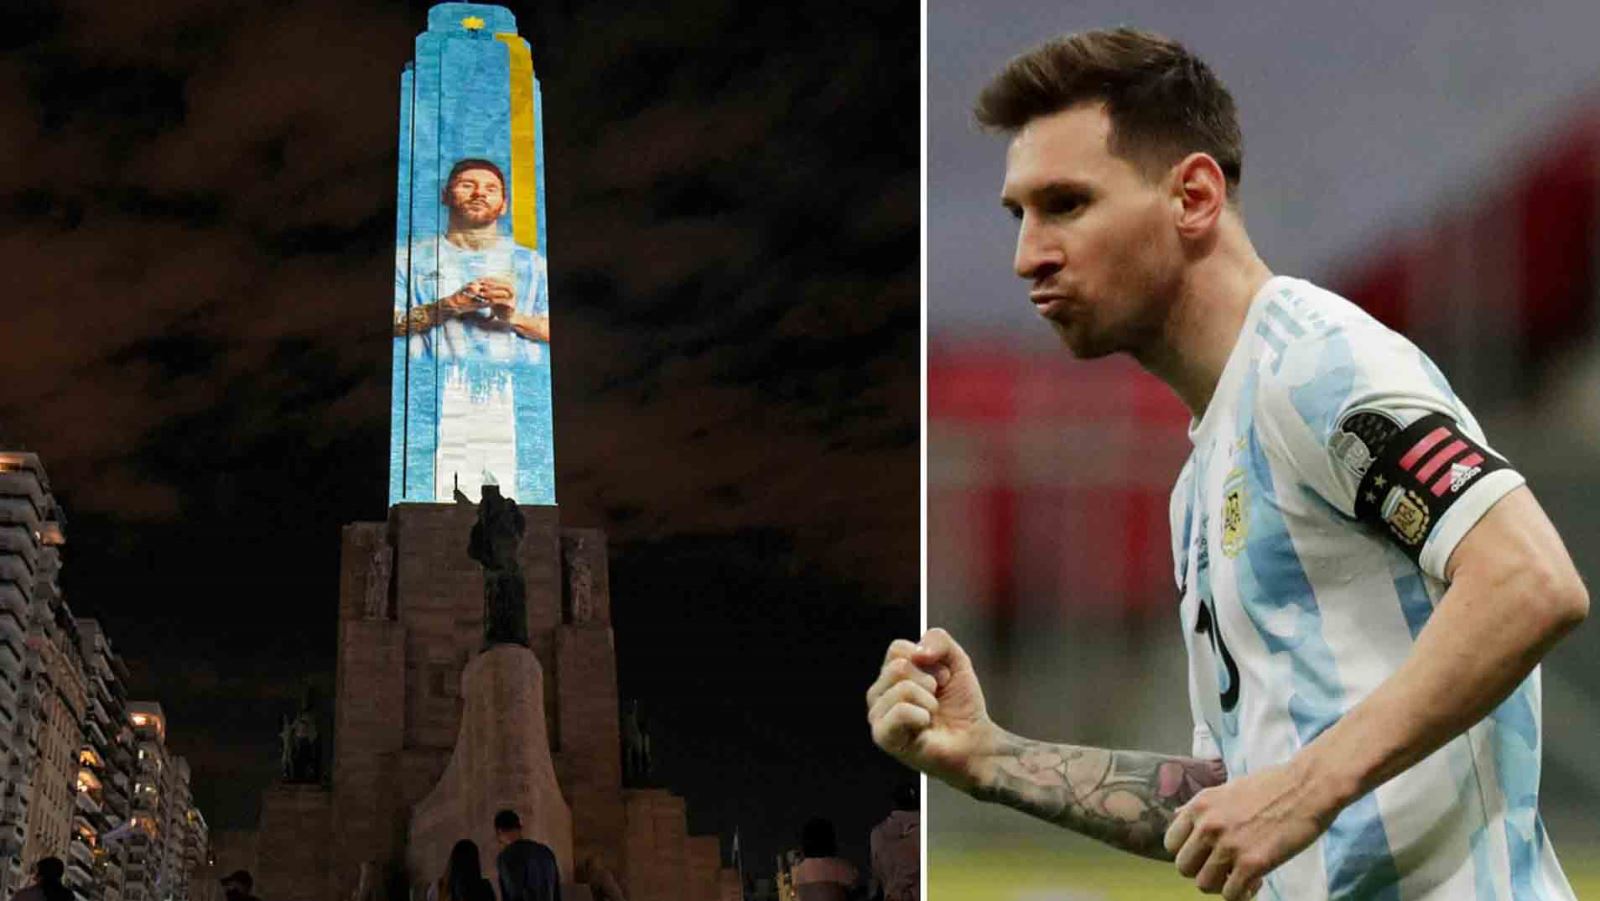 CĐV Argentina cổ vũ Messi theo cách đặc biệt